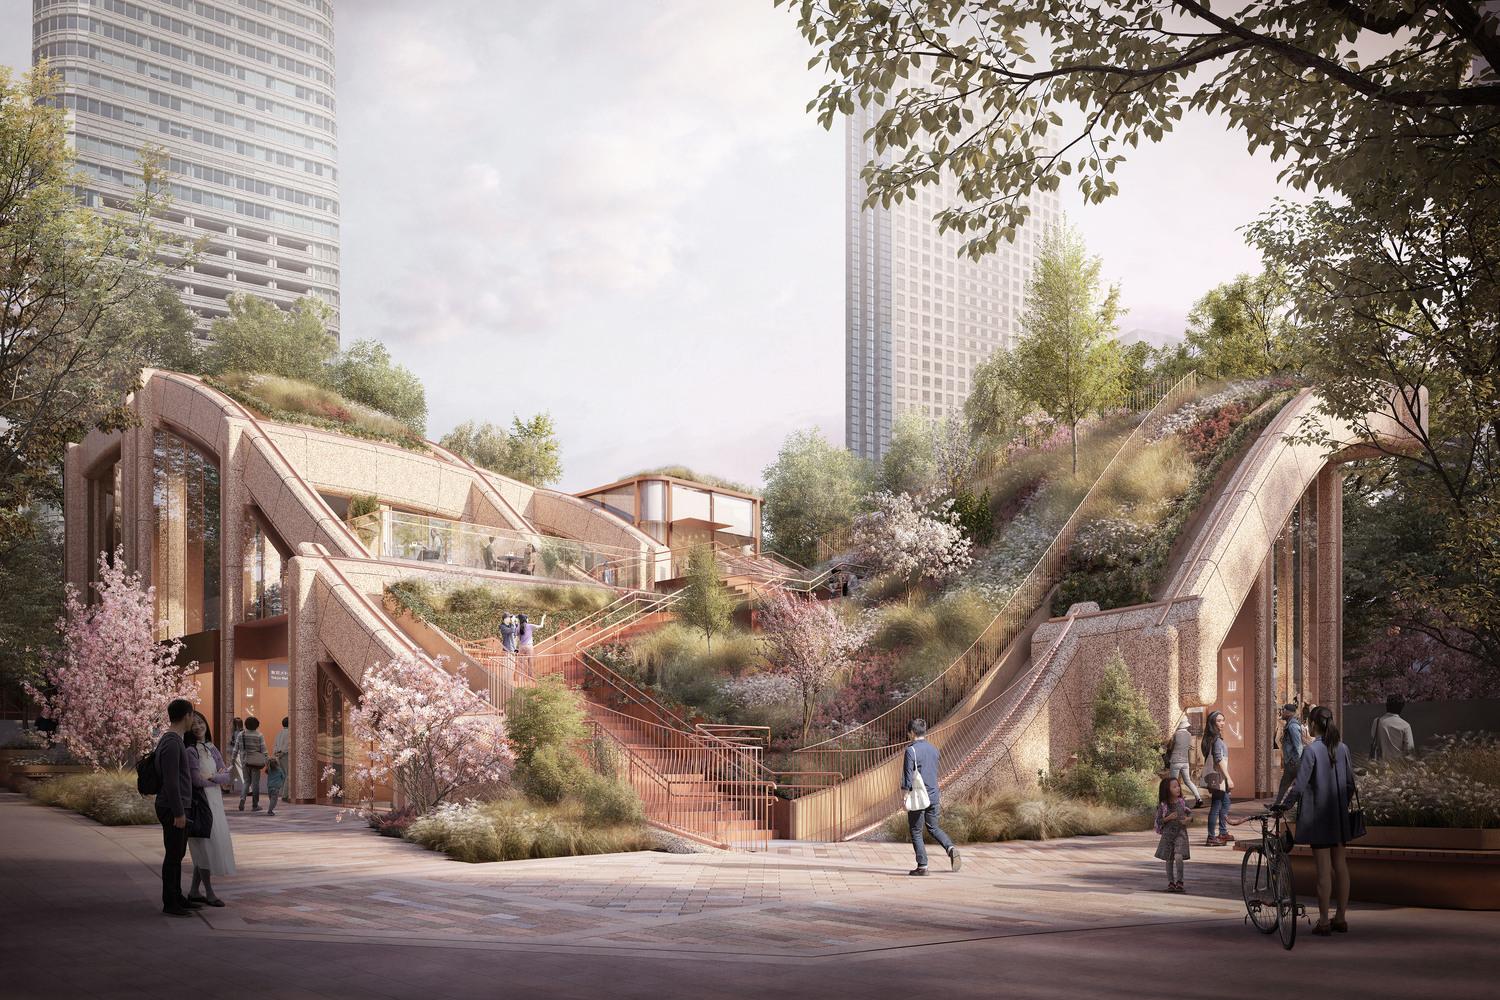 日本東京全新綠化涼棚 在都市中將建築與大自然互相結合